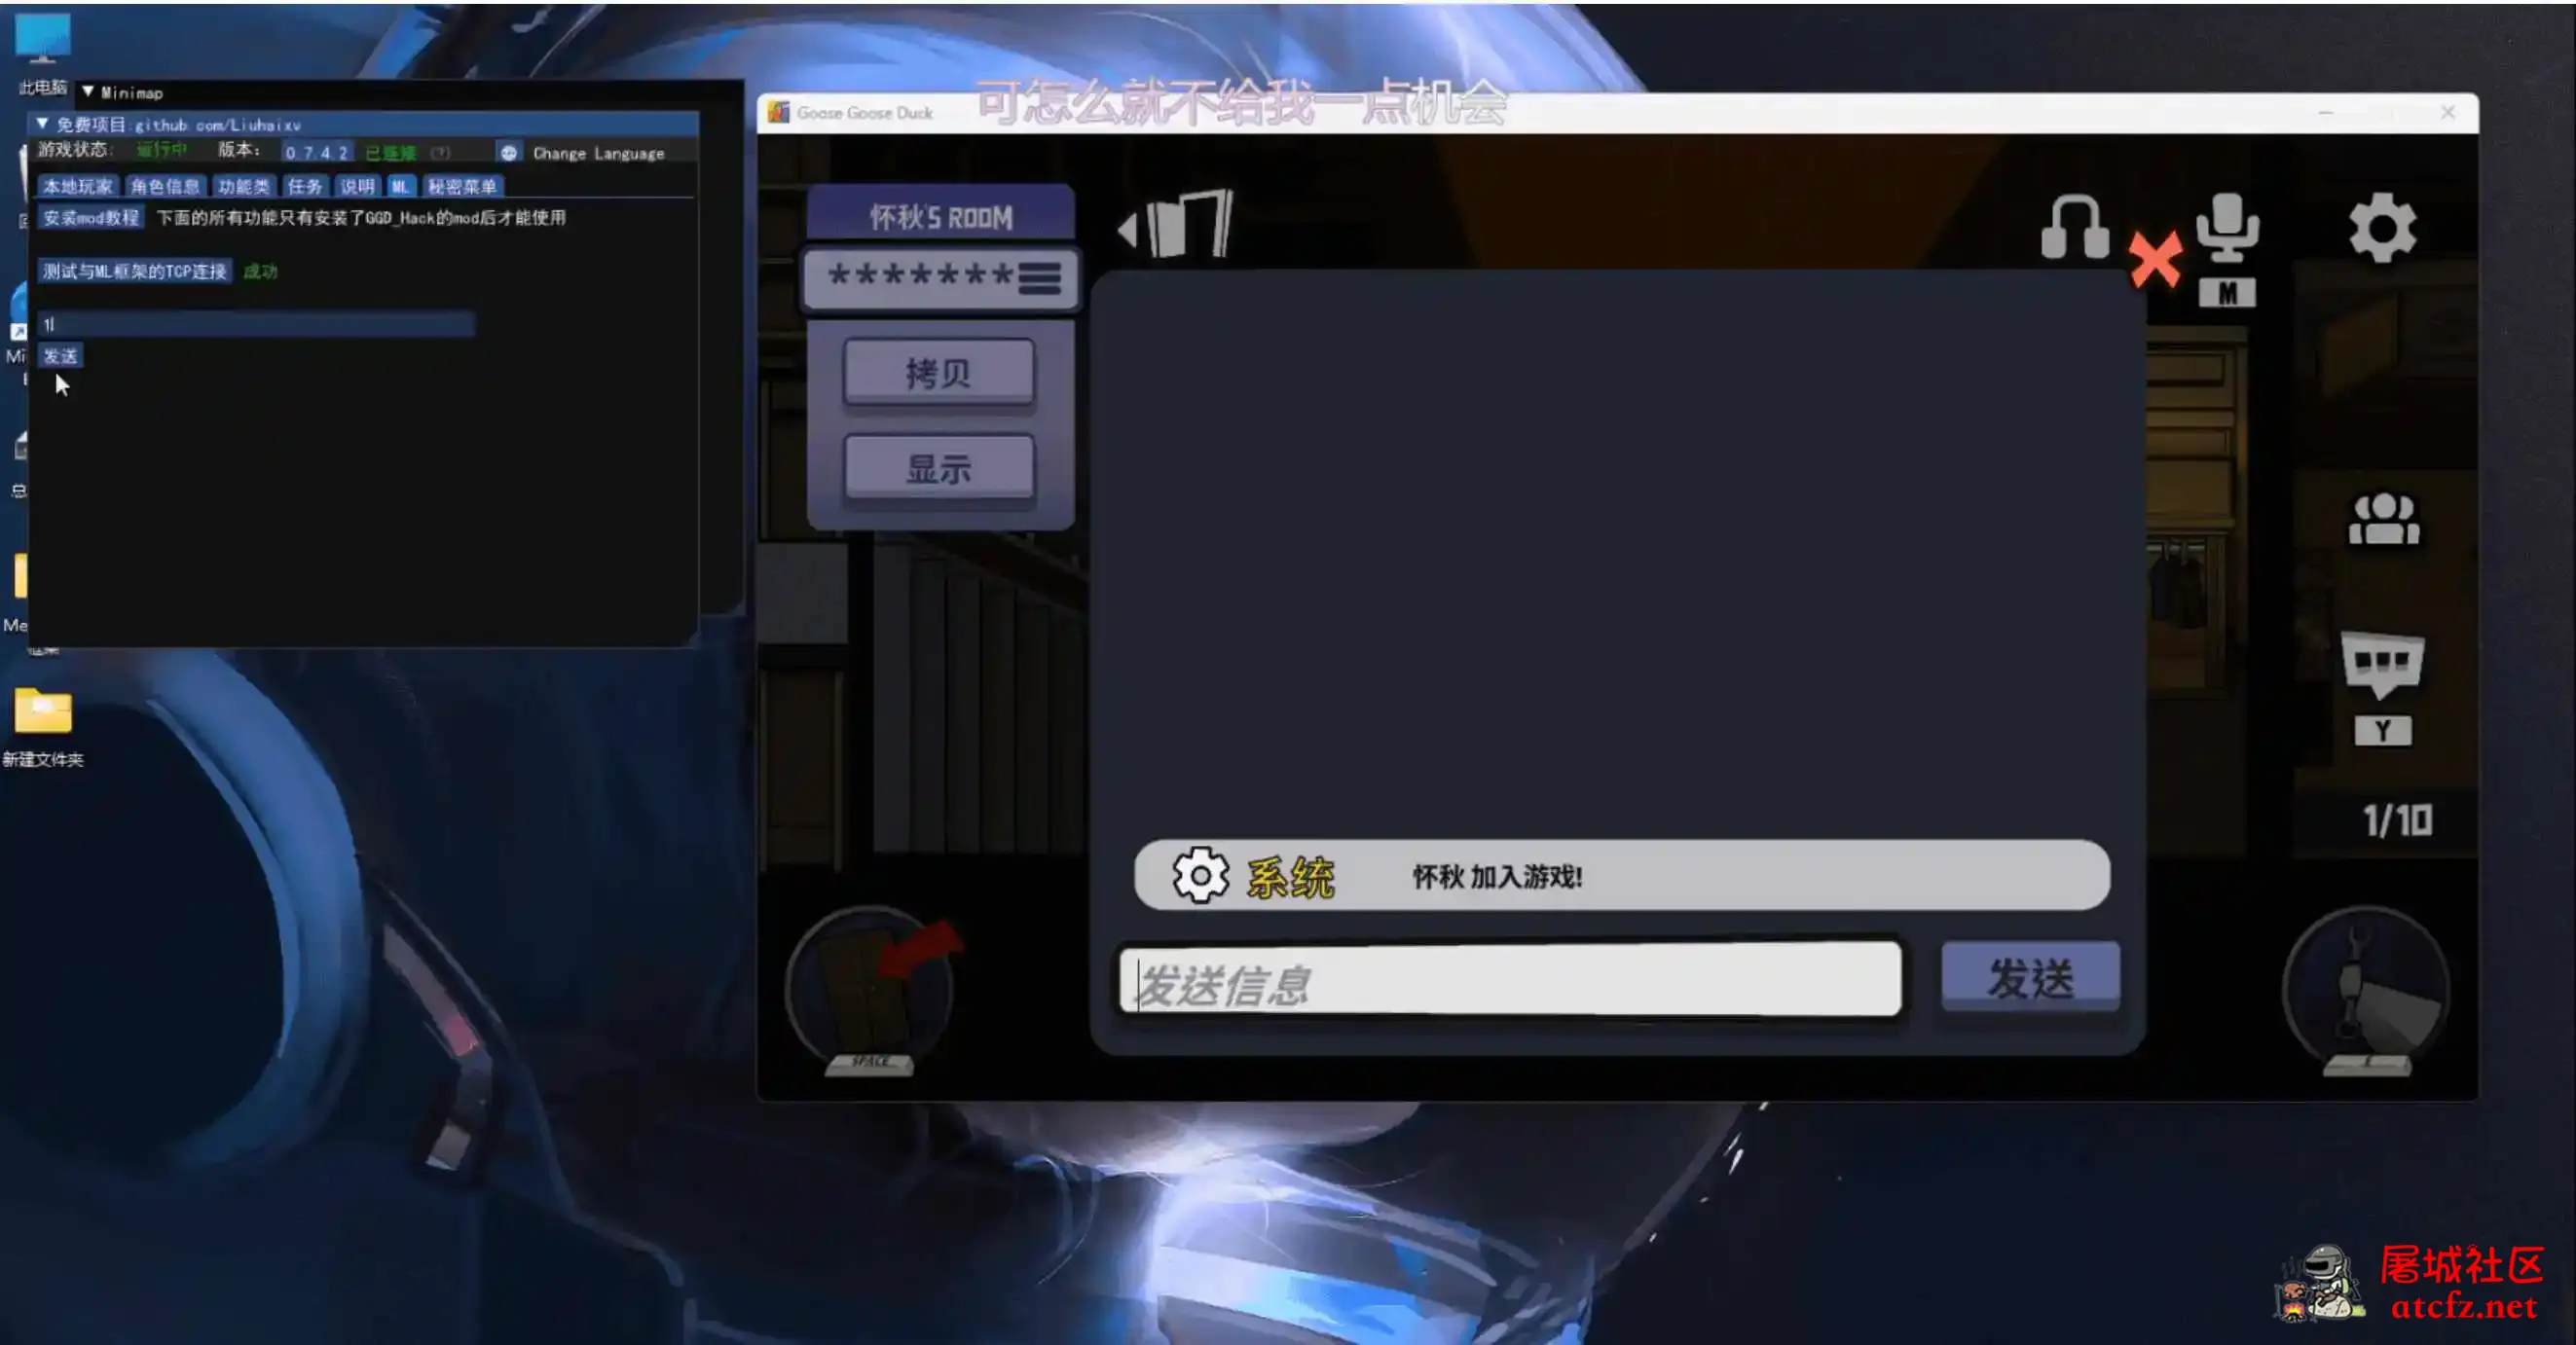 鹅鸭杀Minimp显玩家传送无冷却穿墙多功能辅助v1.5.1 屠城辅助网www.tcfz1.com1001